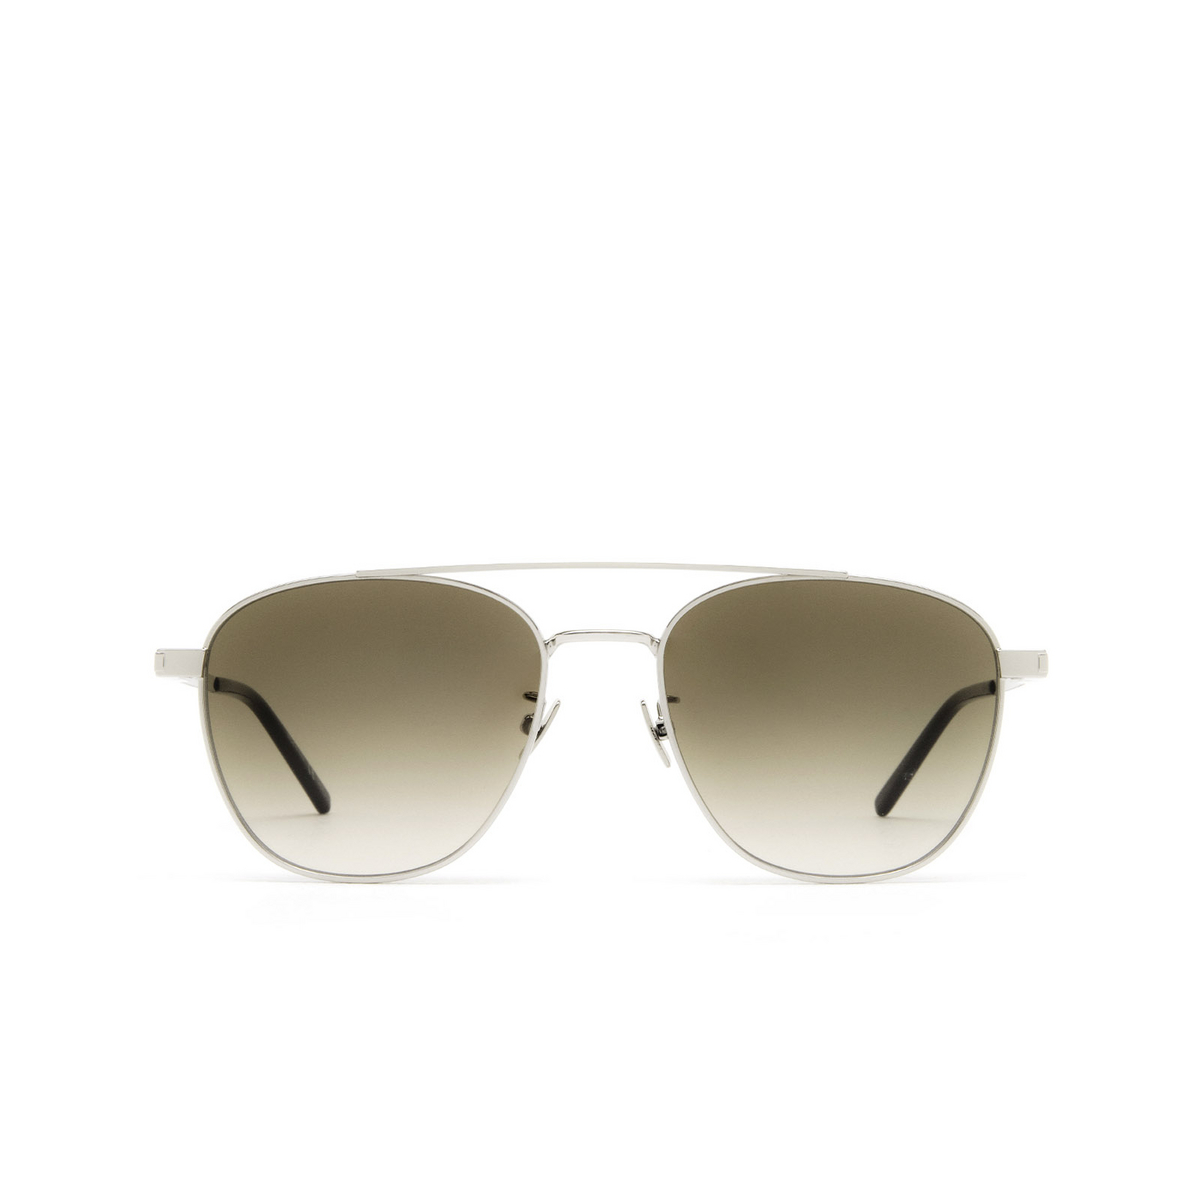 Saint Laurent® Aviator Sunglasses: SL 531 color Silver 006 - front view.